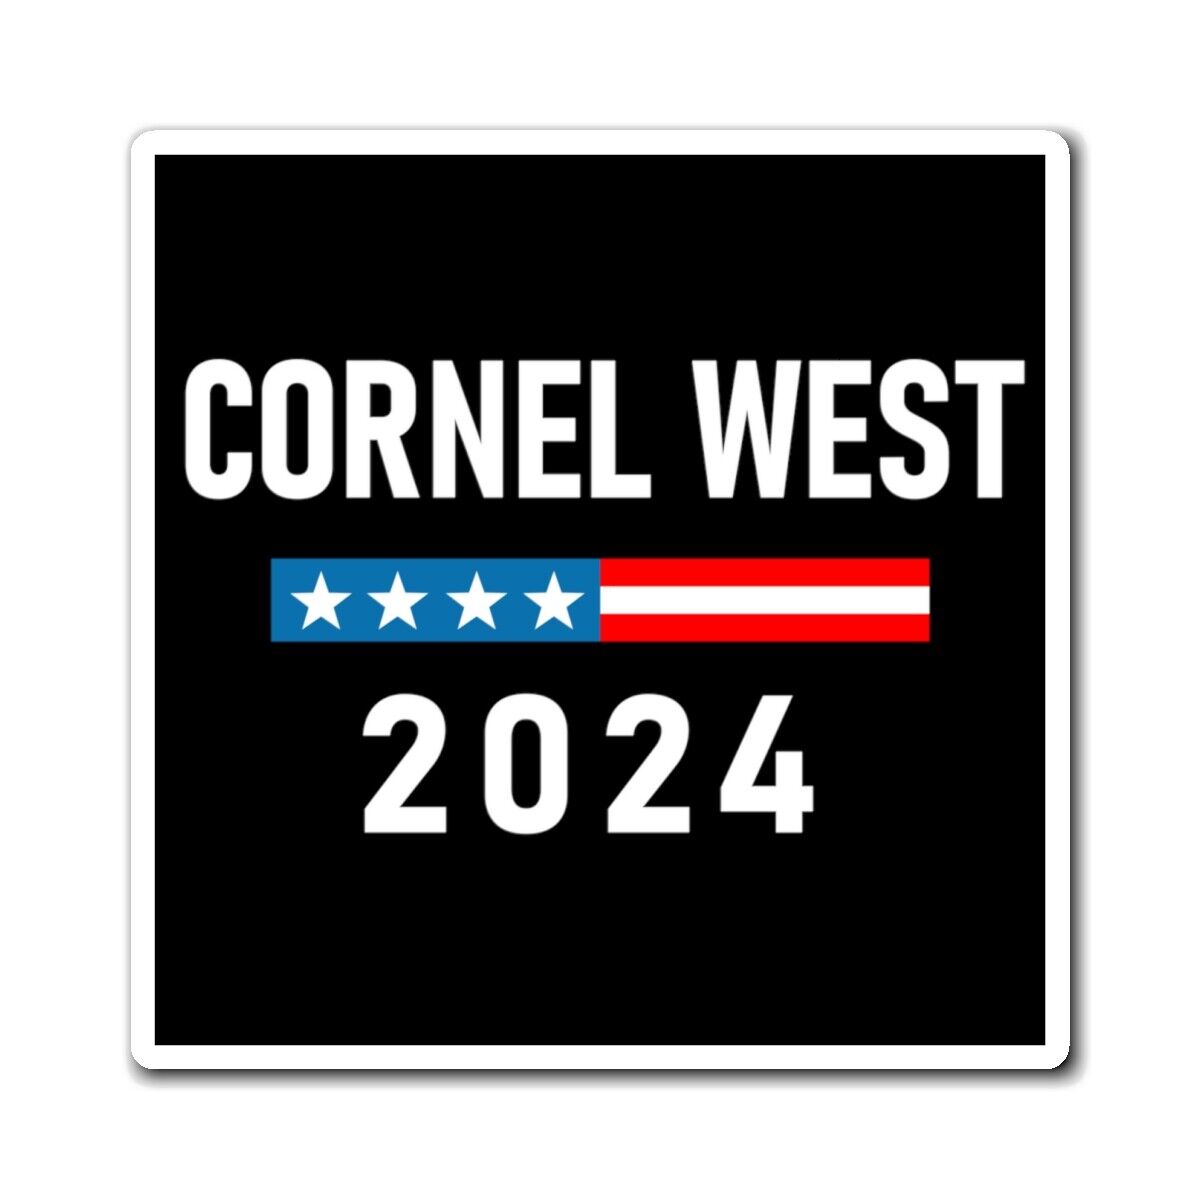 Cornel West 2024 Magnet Cornel 2024 for President Car Magnet Bumper Sticker